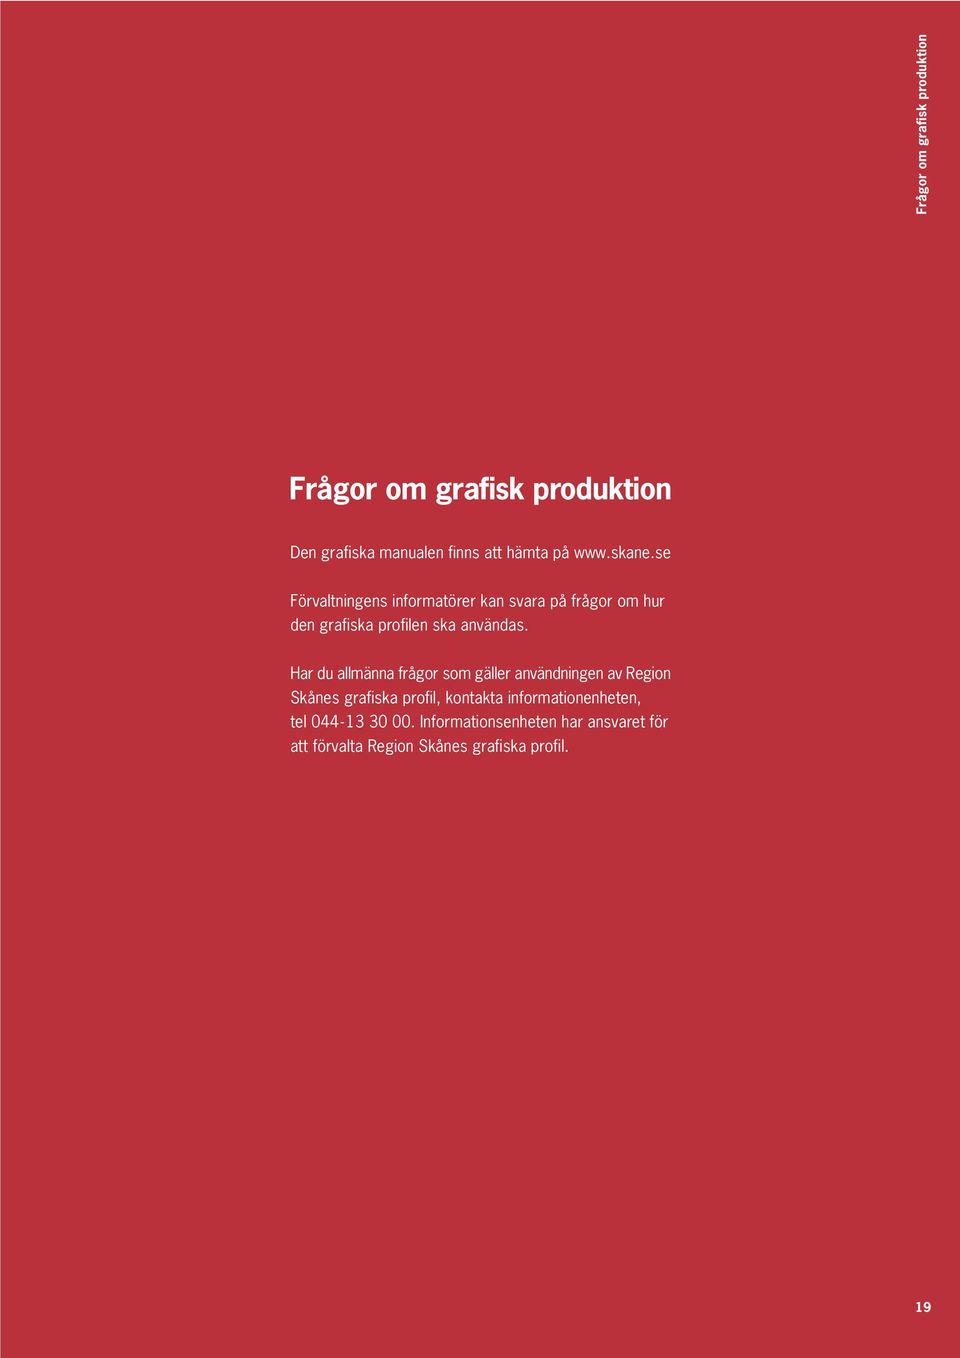 Har du allmänna frågor som gäller användningen av Region Skånes grafiska profil, kontakta